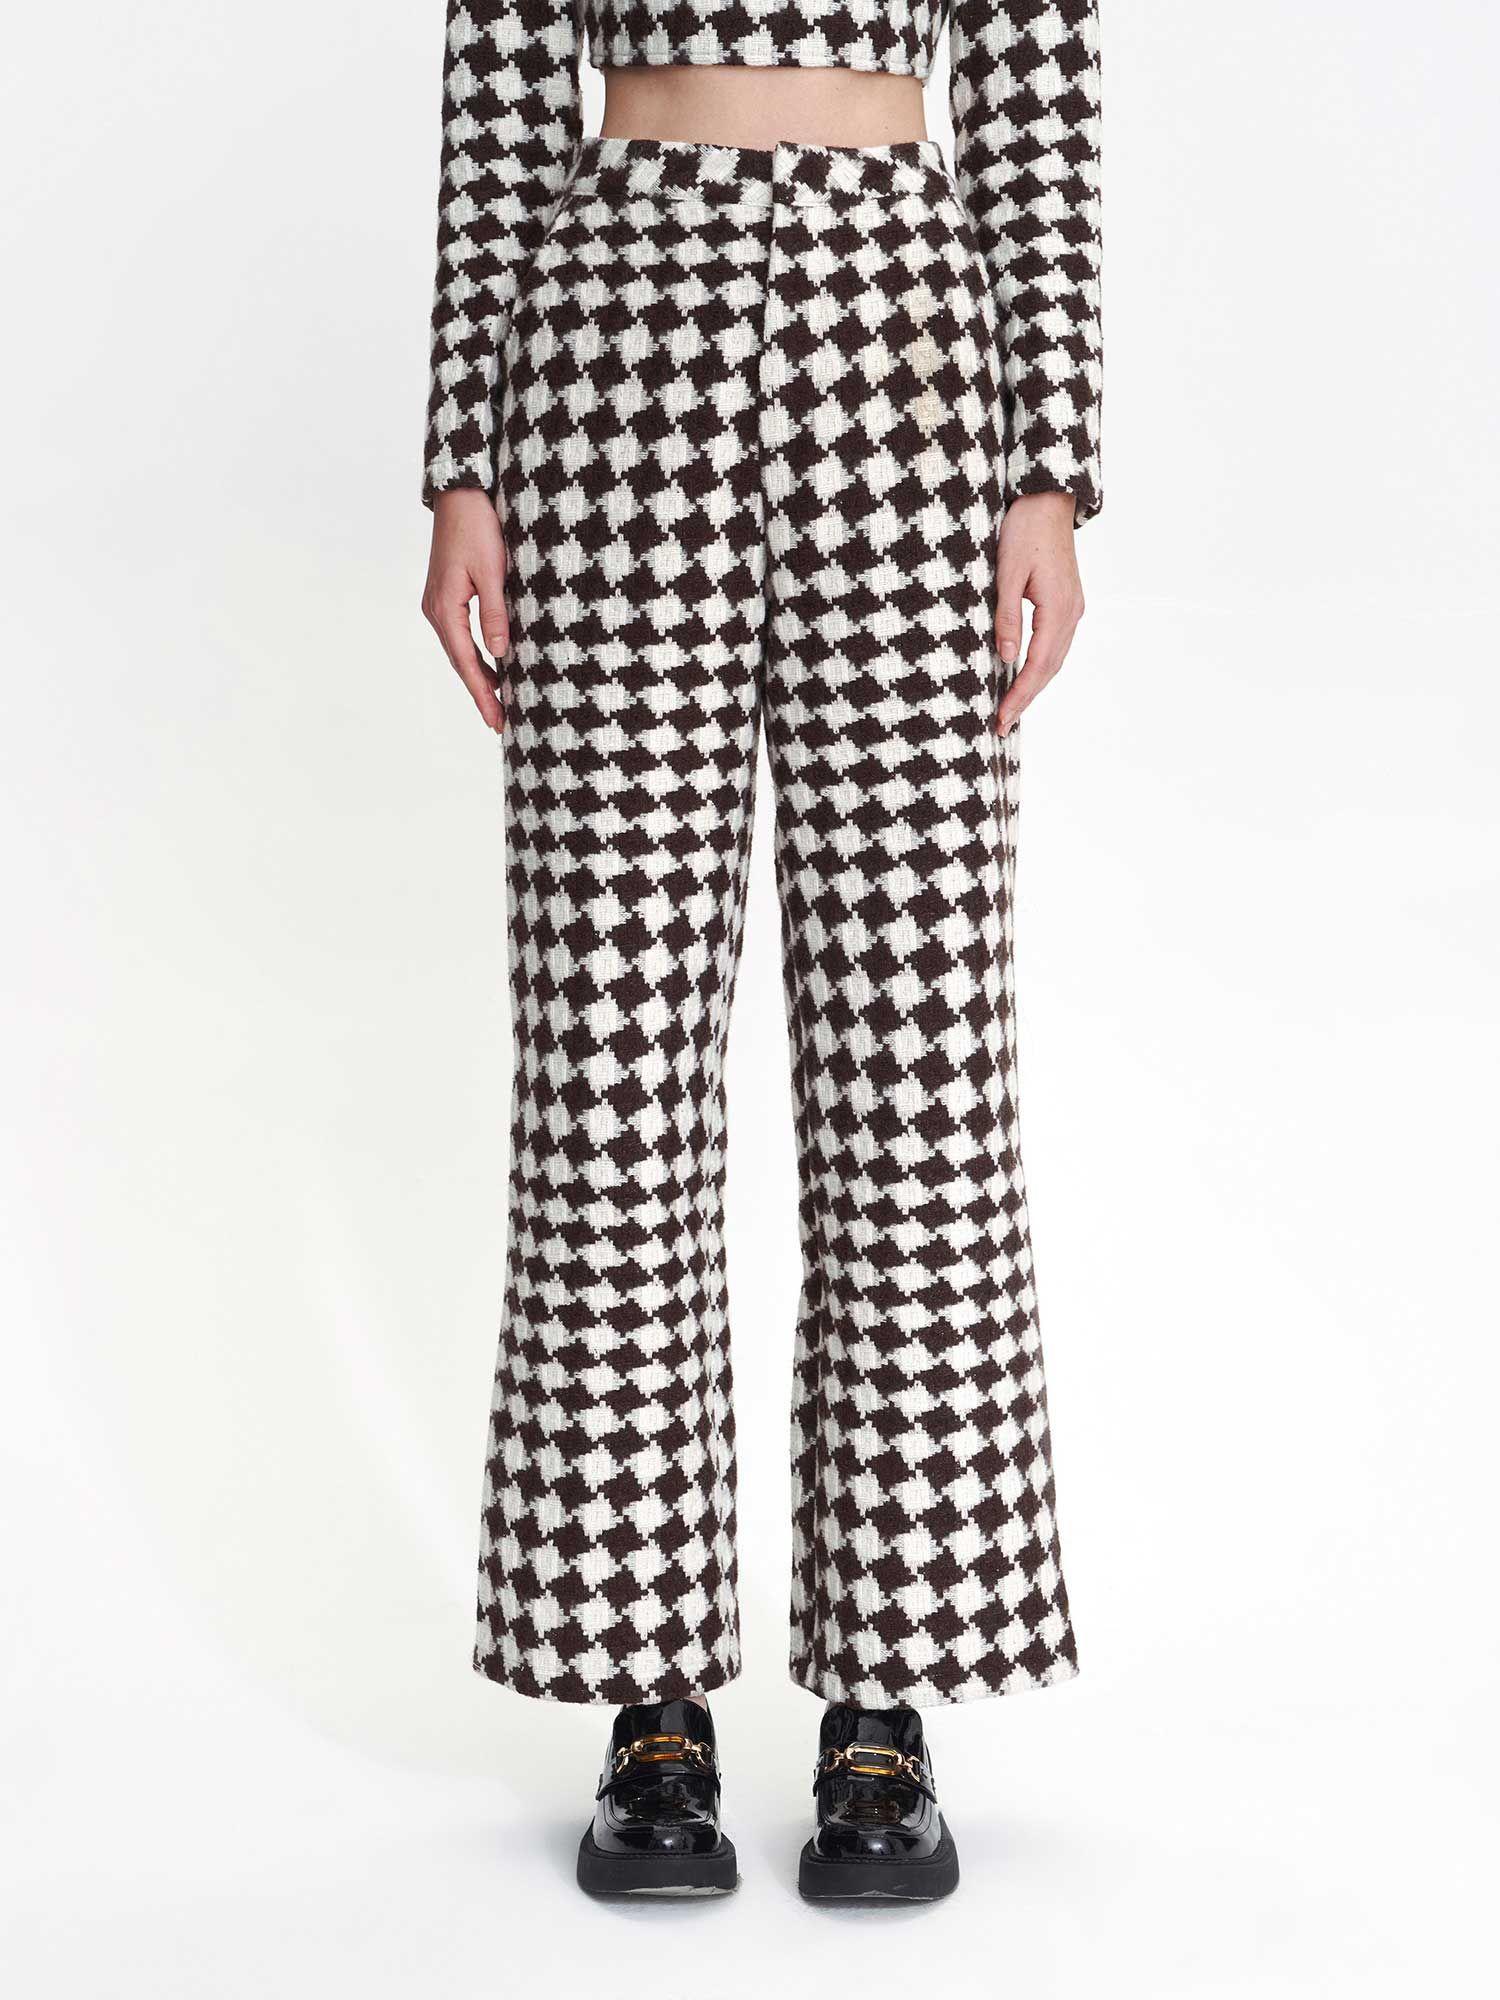 checker board trousers